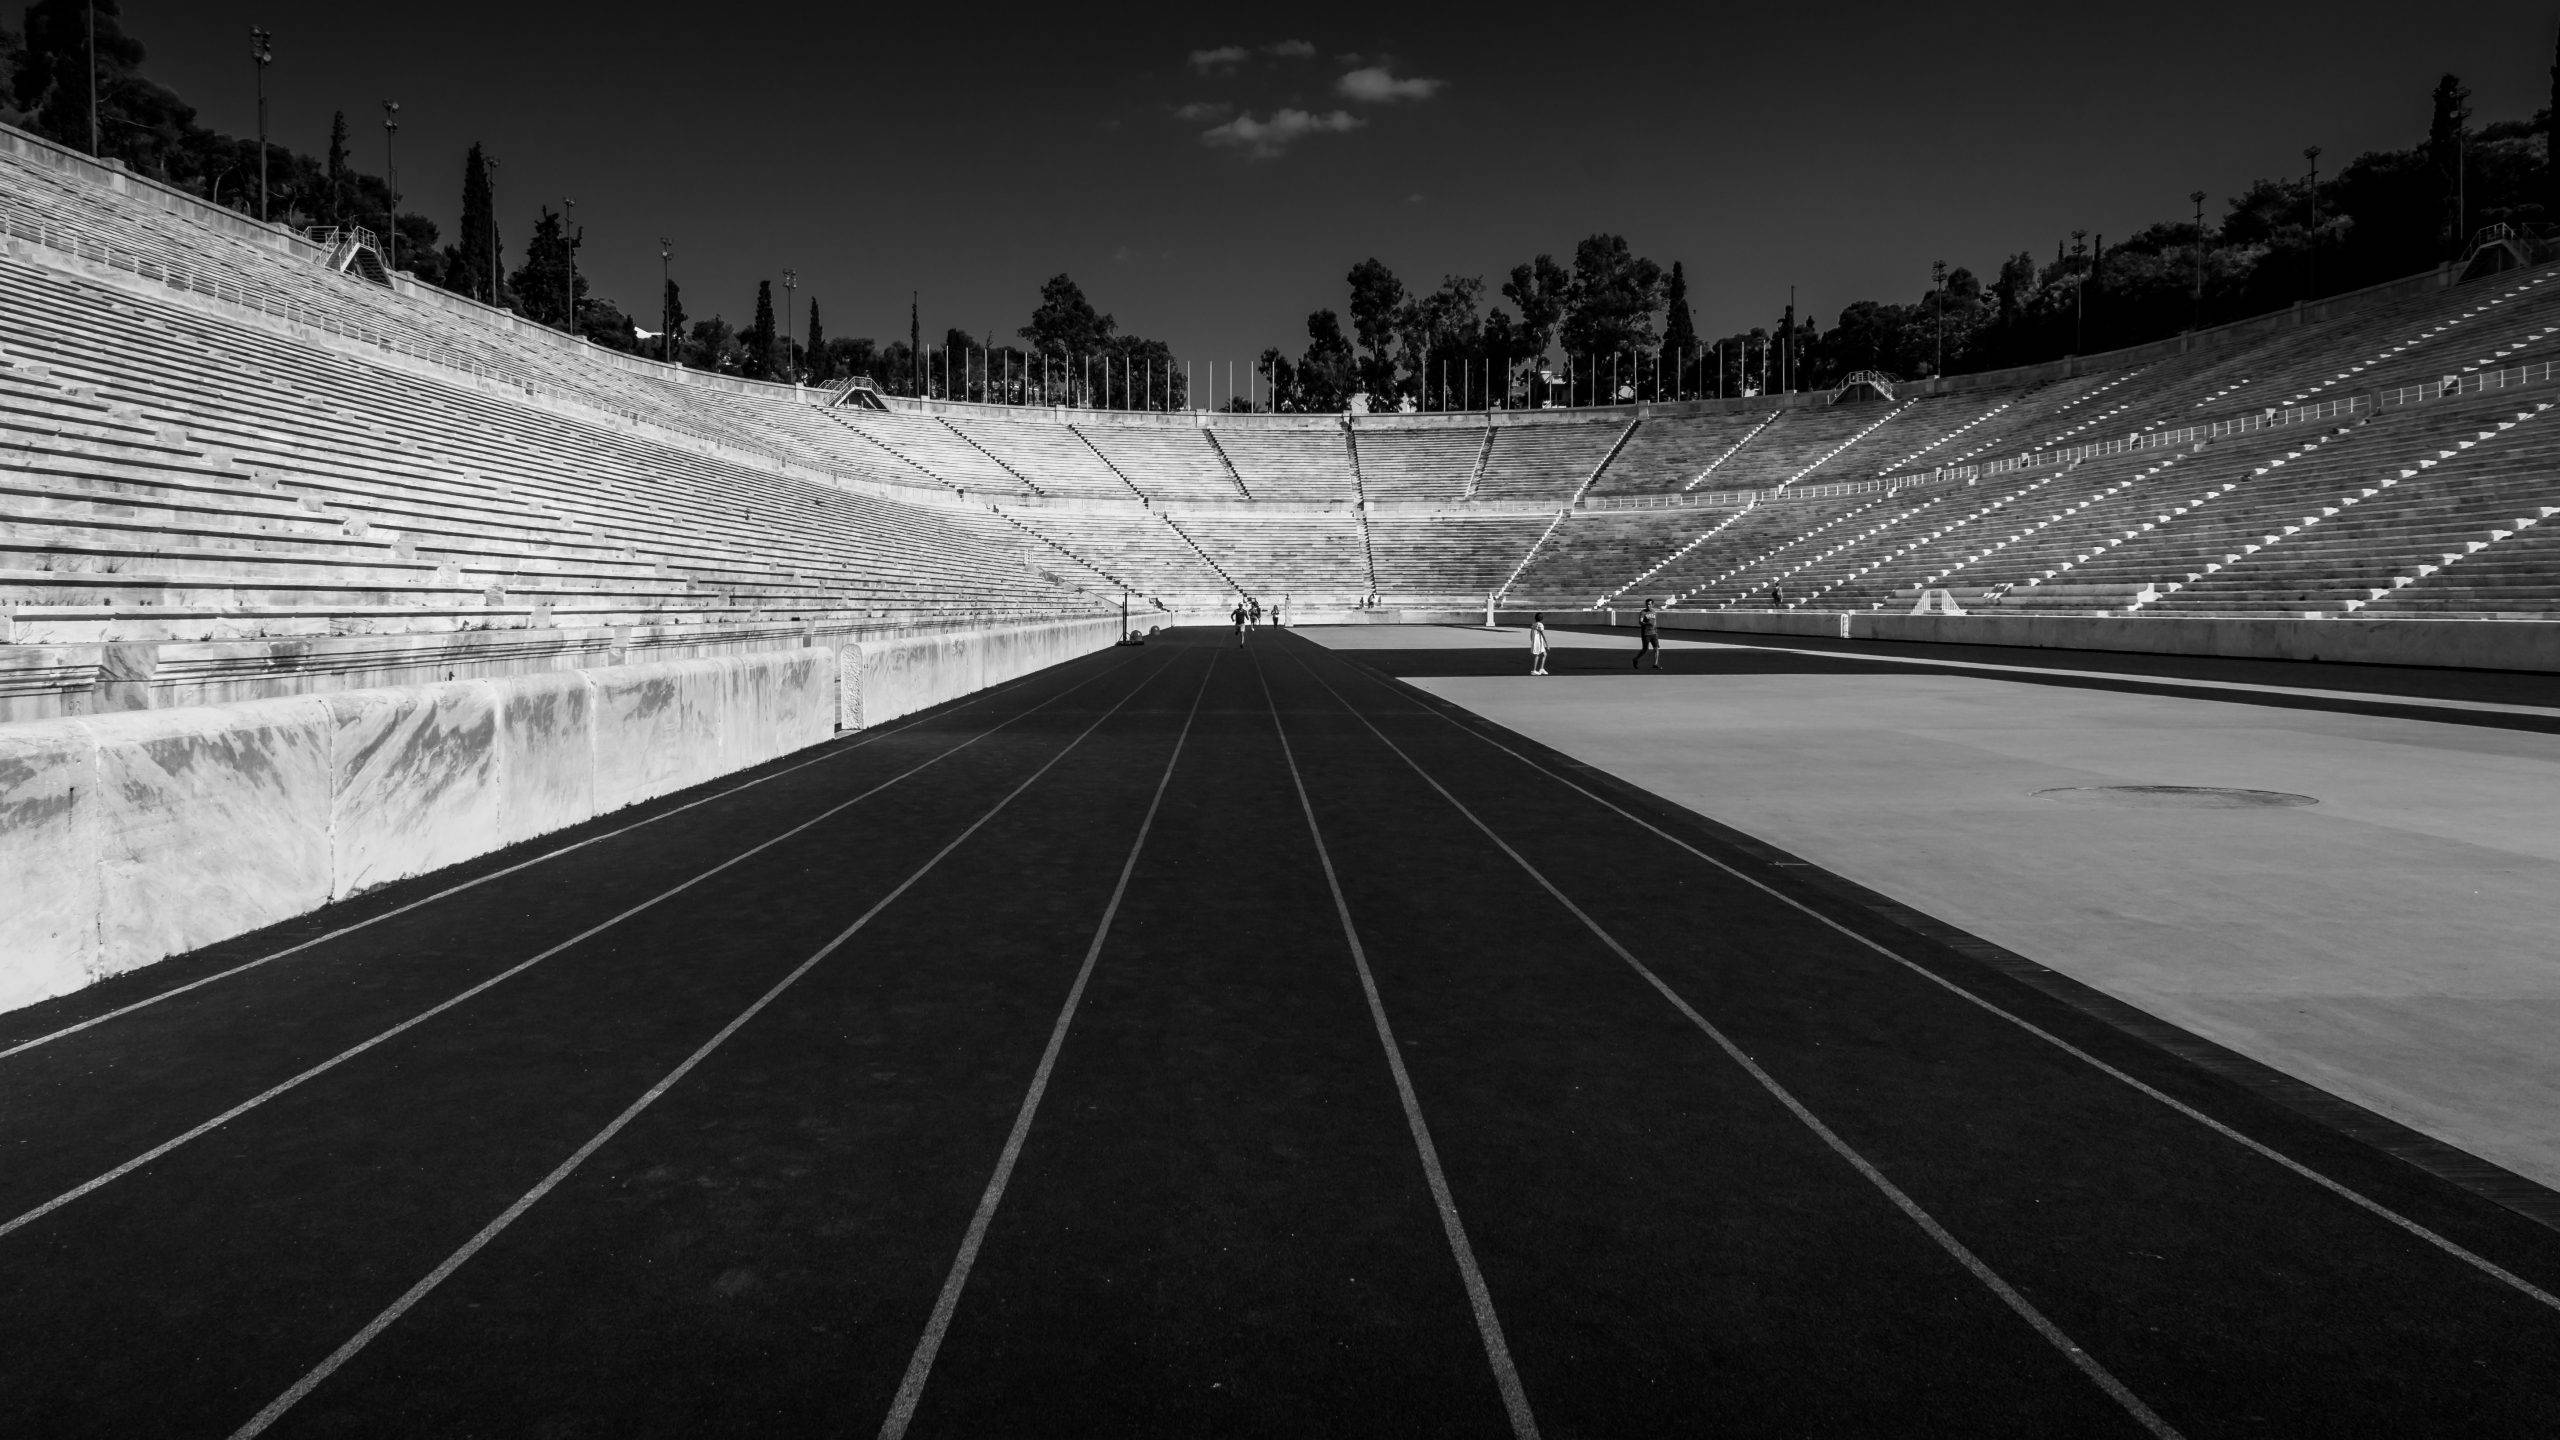 Panathenaic Stadium - Athens, Greece